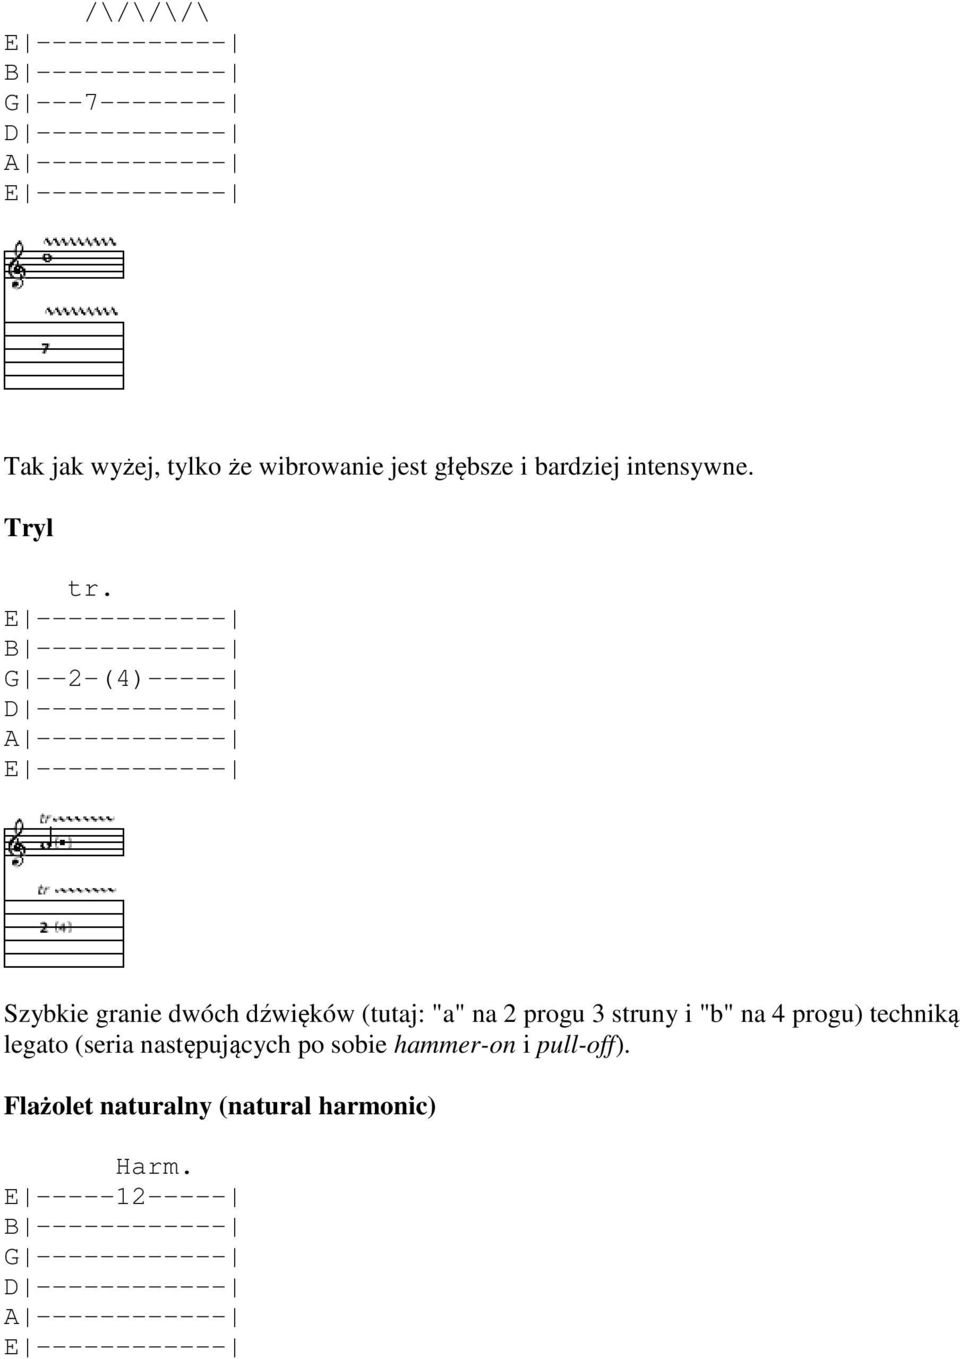 G --2-(4)----- Szybkie granie dwóch dźwięków (tutaj: "a" na 2 progu 3 struny i